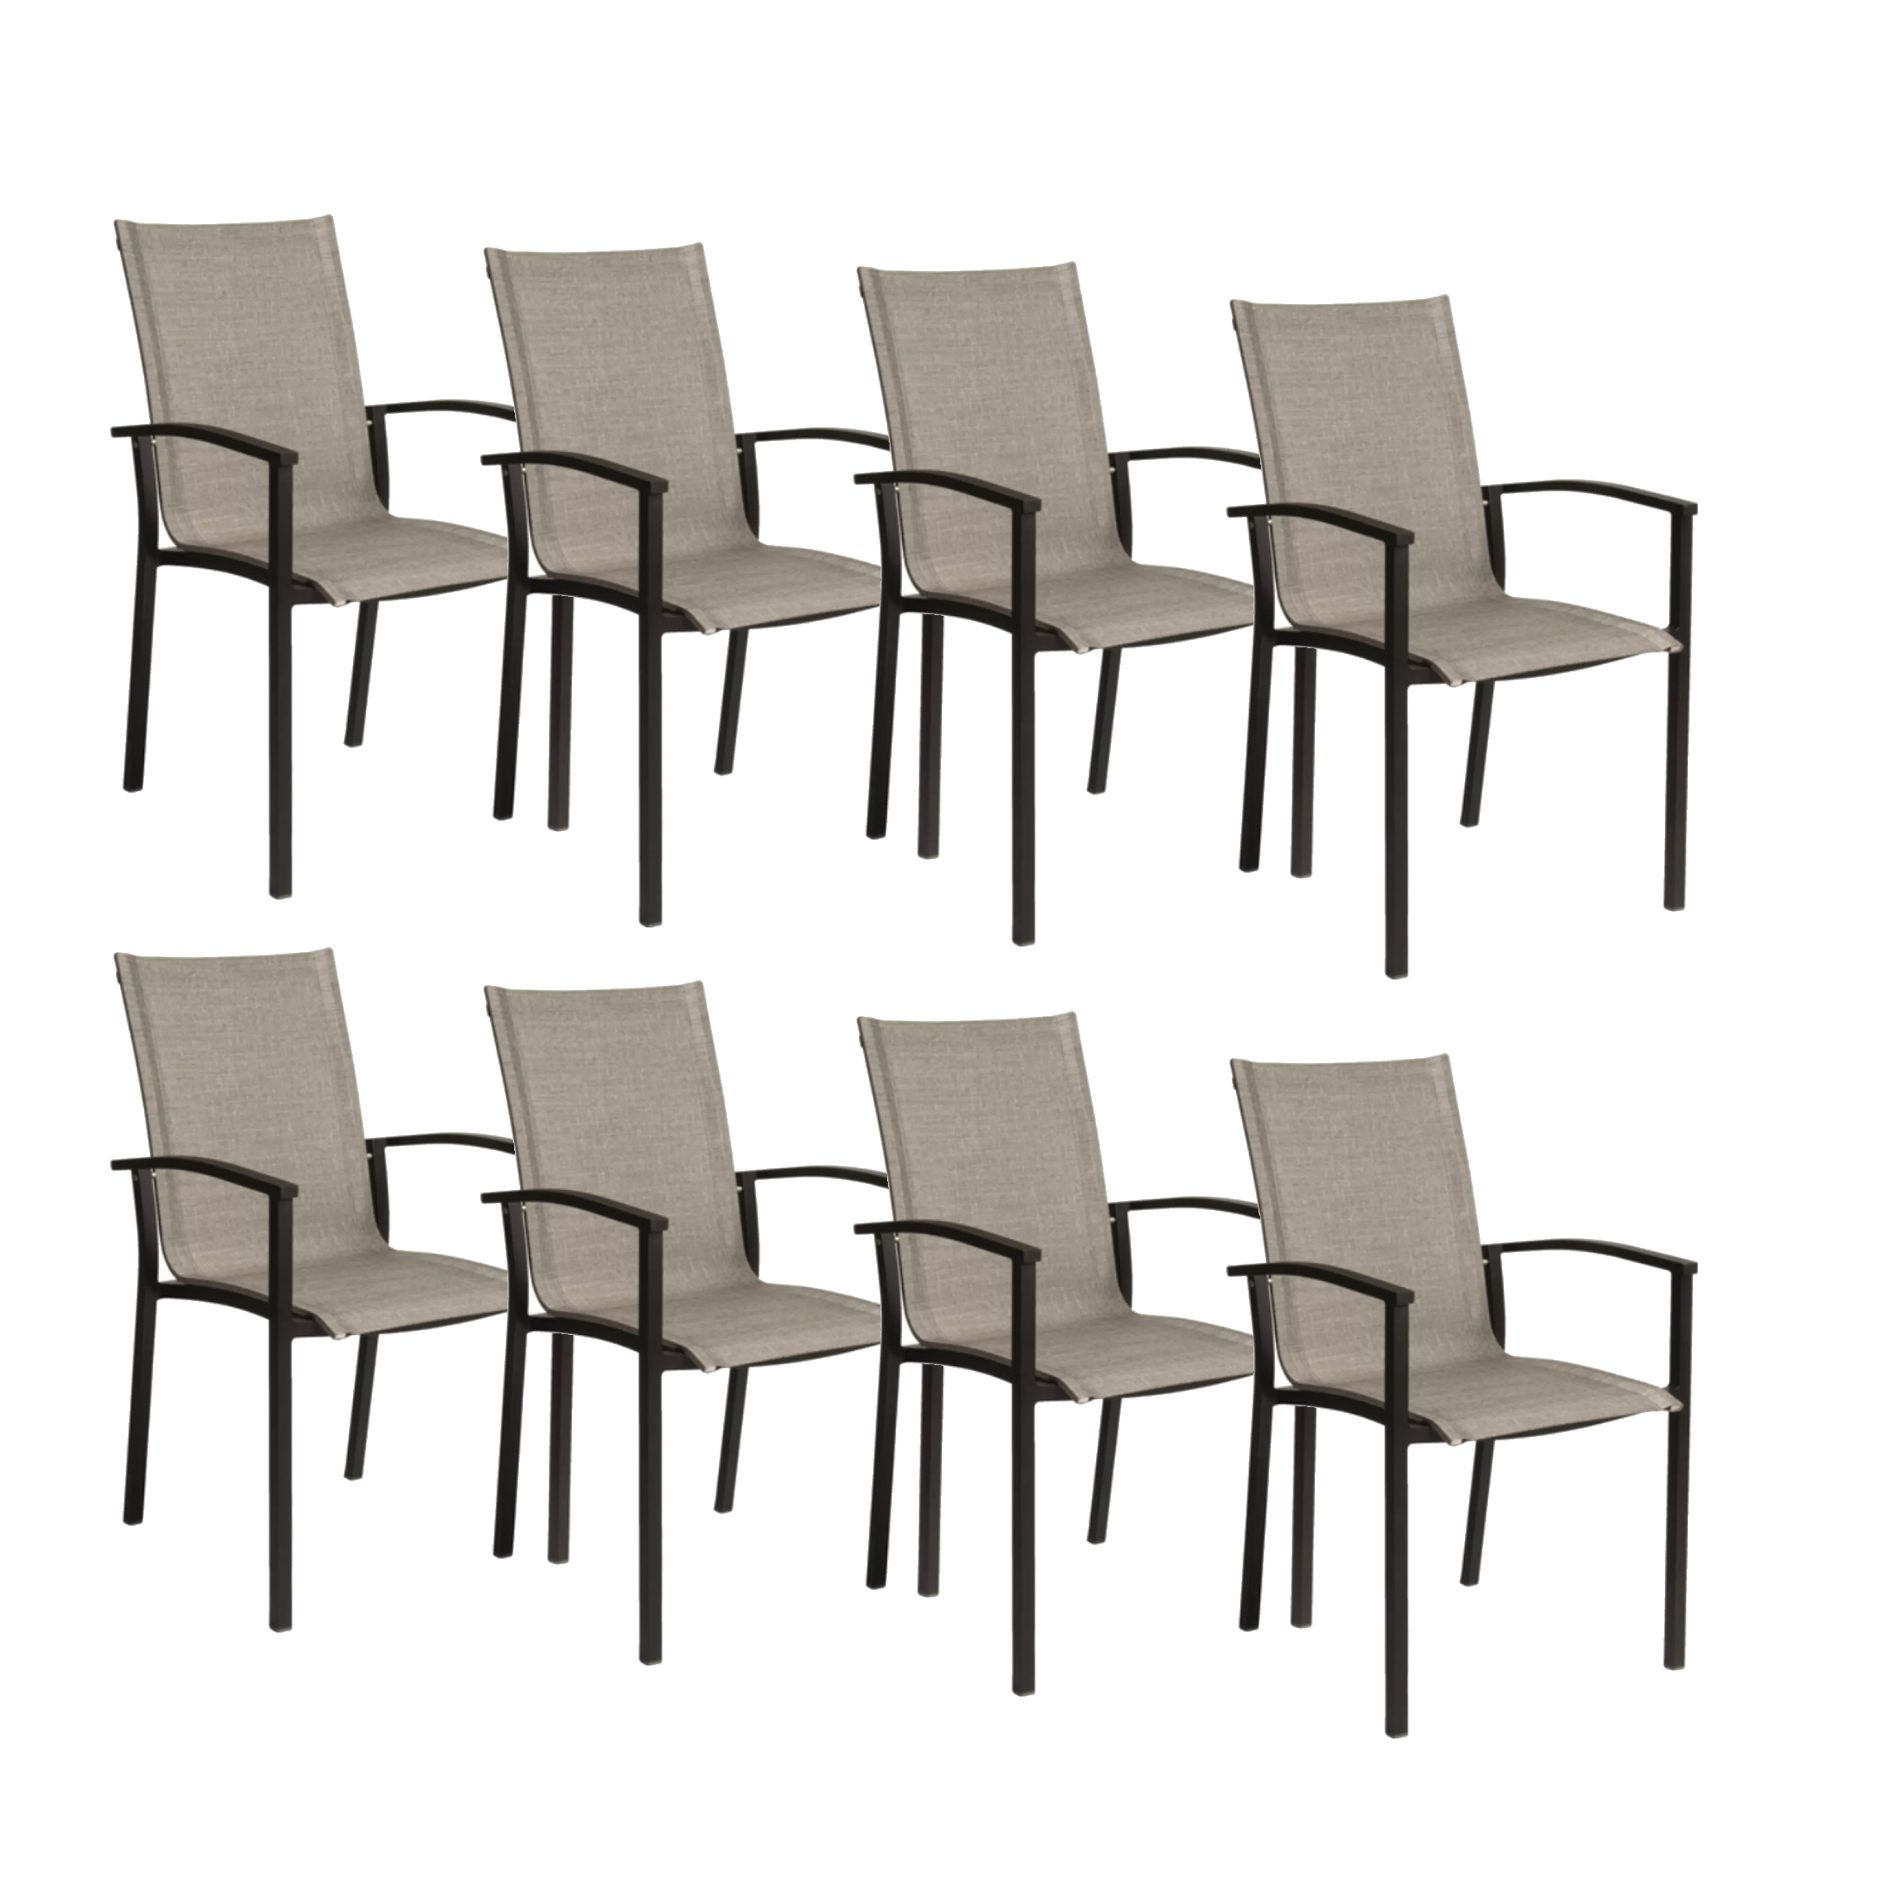 Stern "Evoee" Stapelsessel 8er-Set, Gestell Aluminium schwarz matt, Sitzfläche Textilgewebe Leinen grau